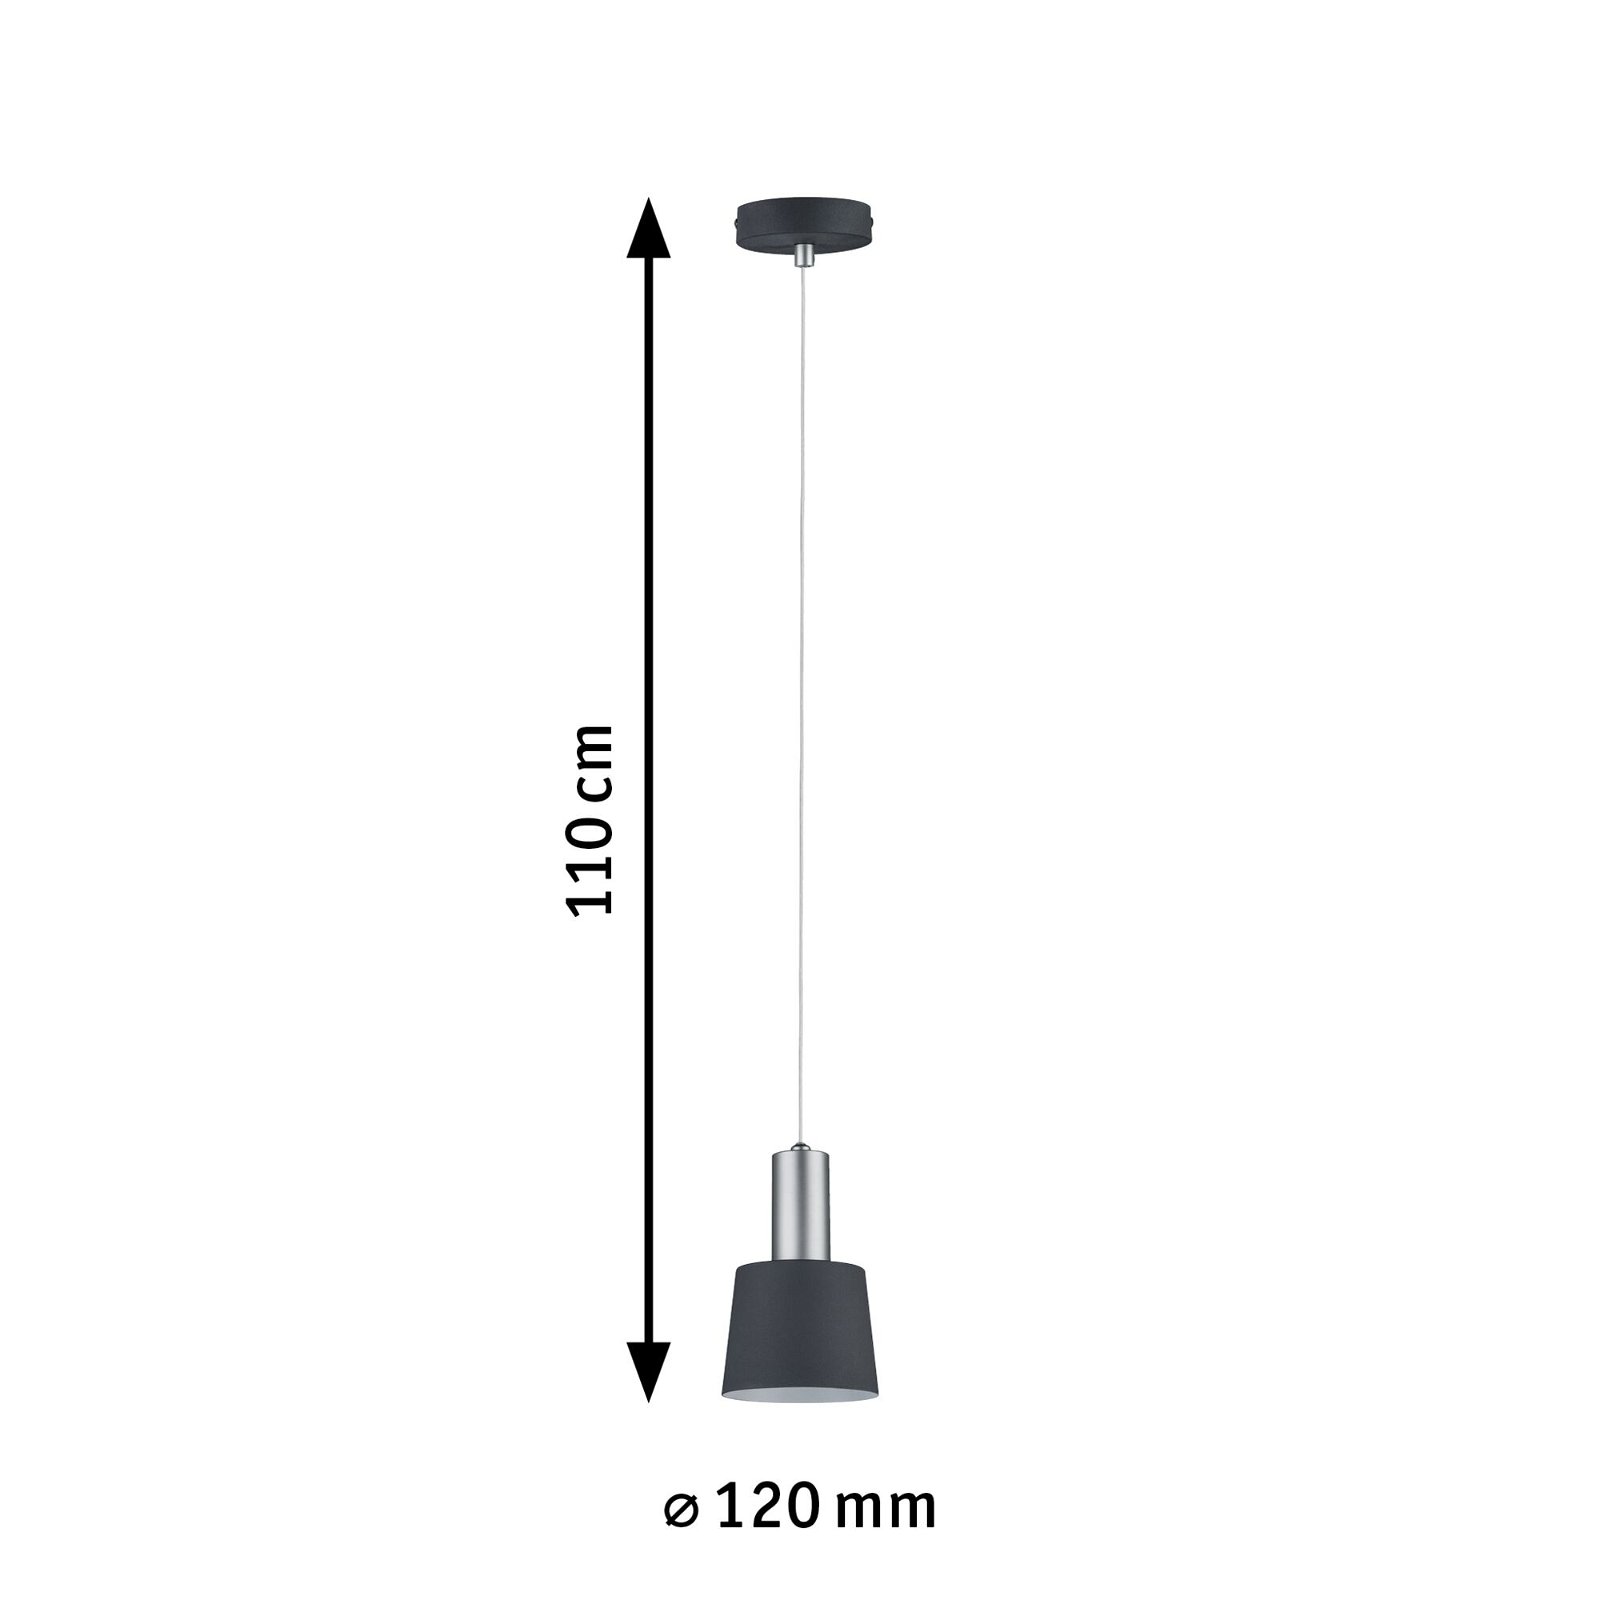 Neordic Hanglamp Haldar E14 max. 20W Donkergrijs/Chroom mat dimbaar Metaal